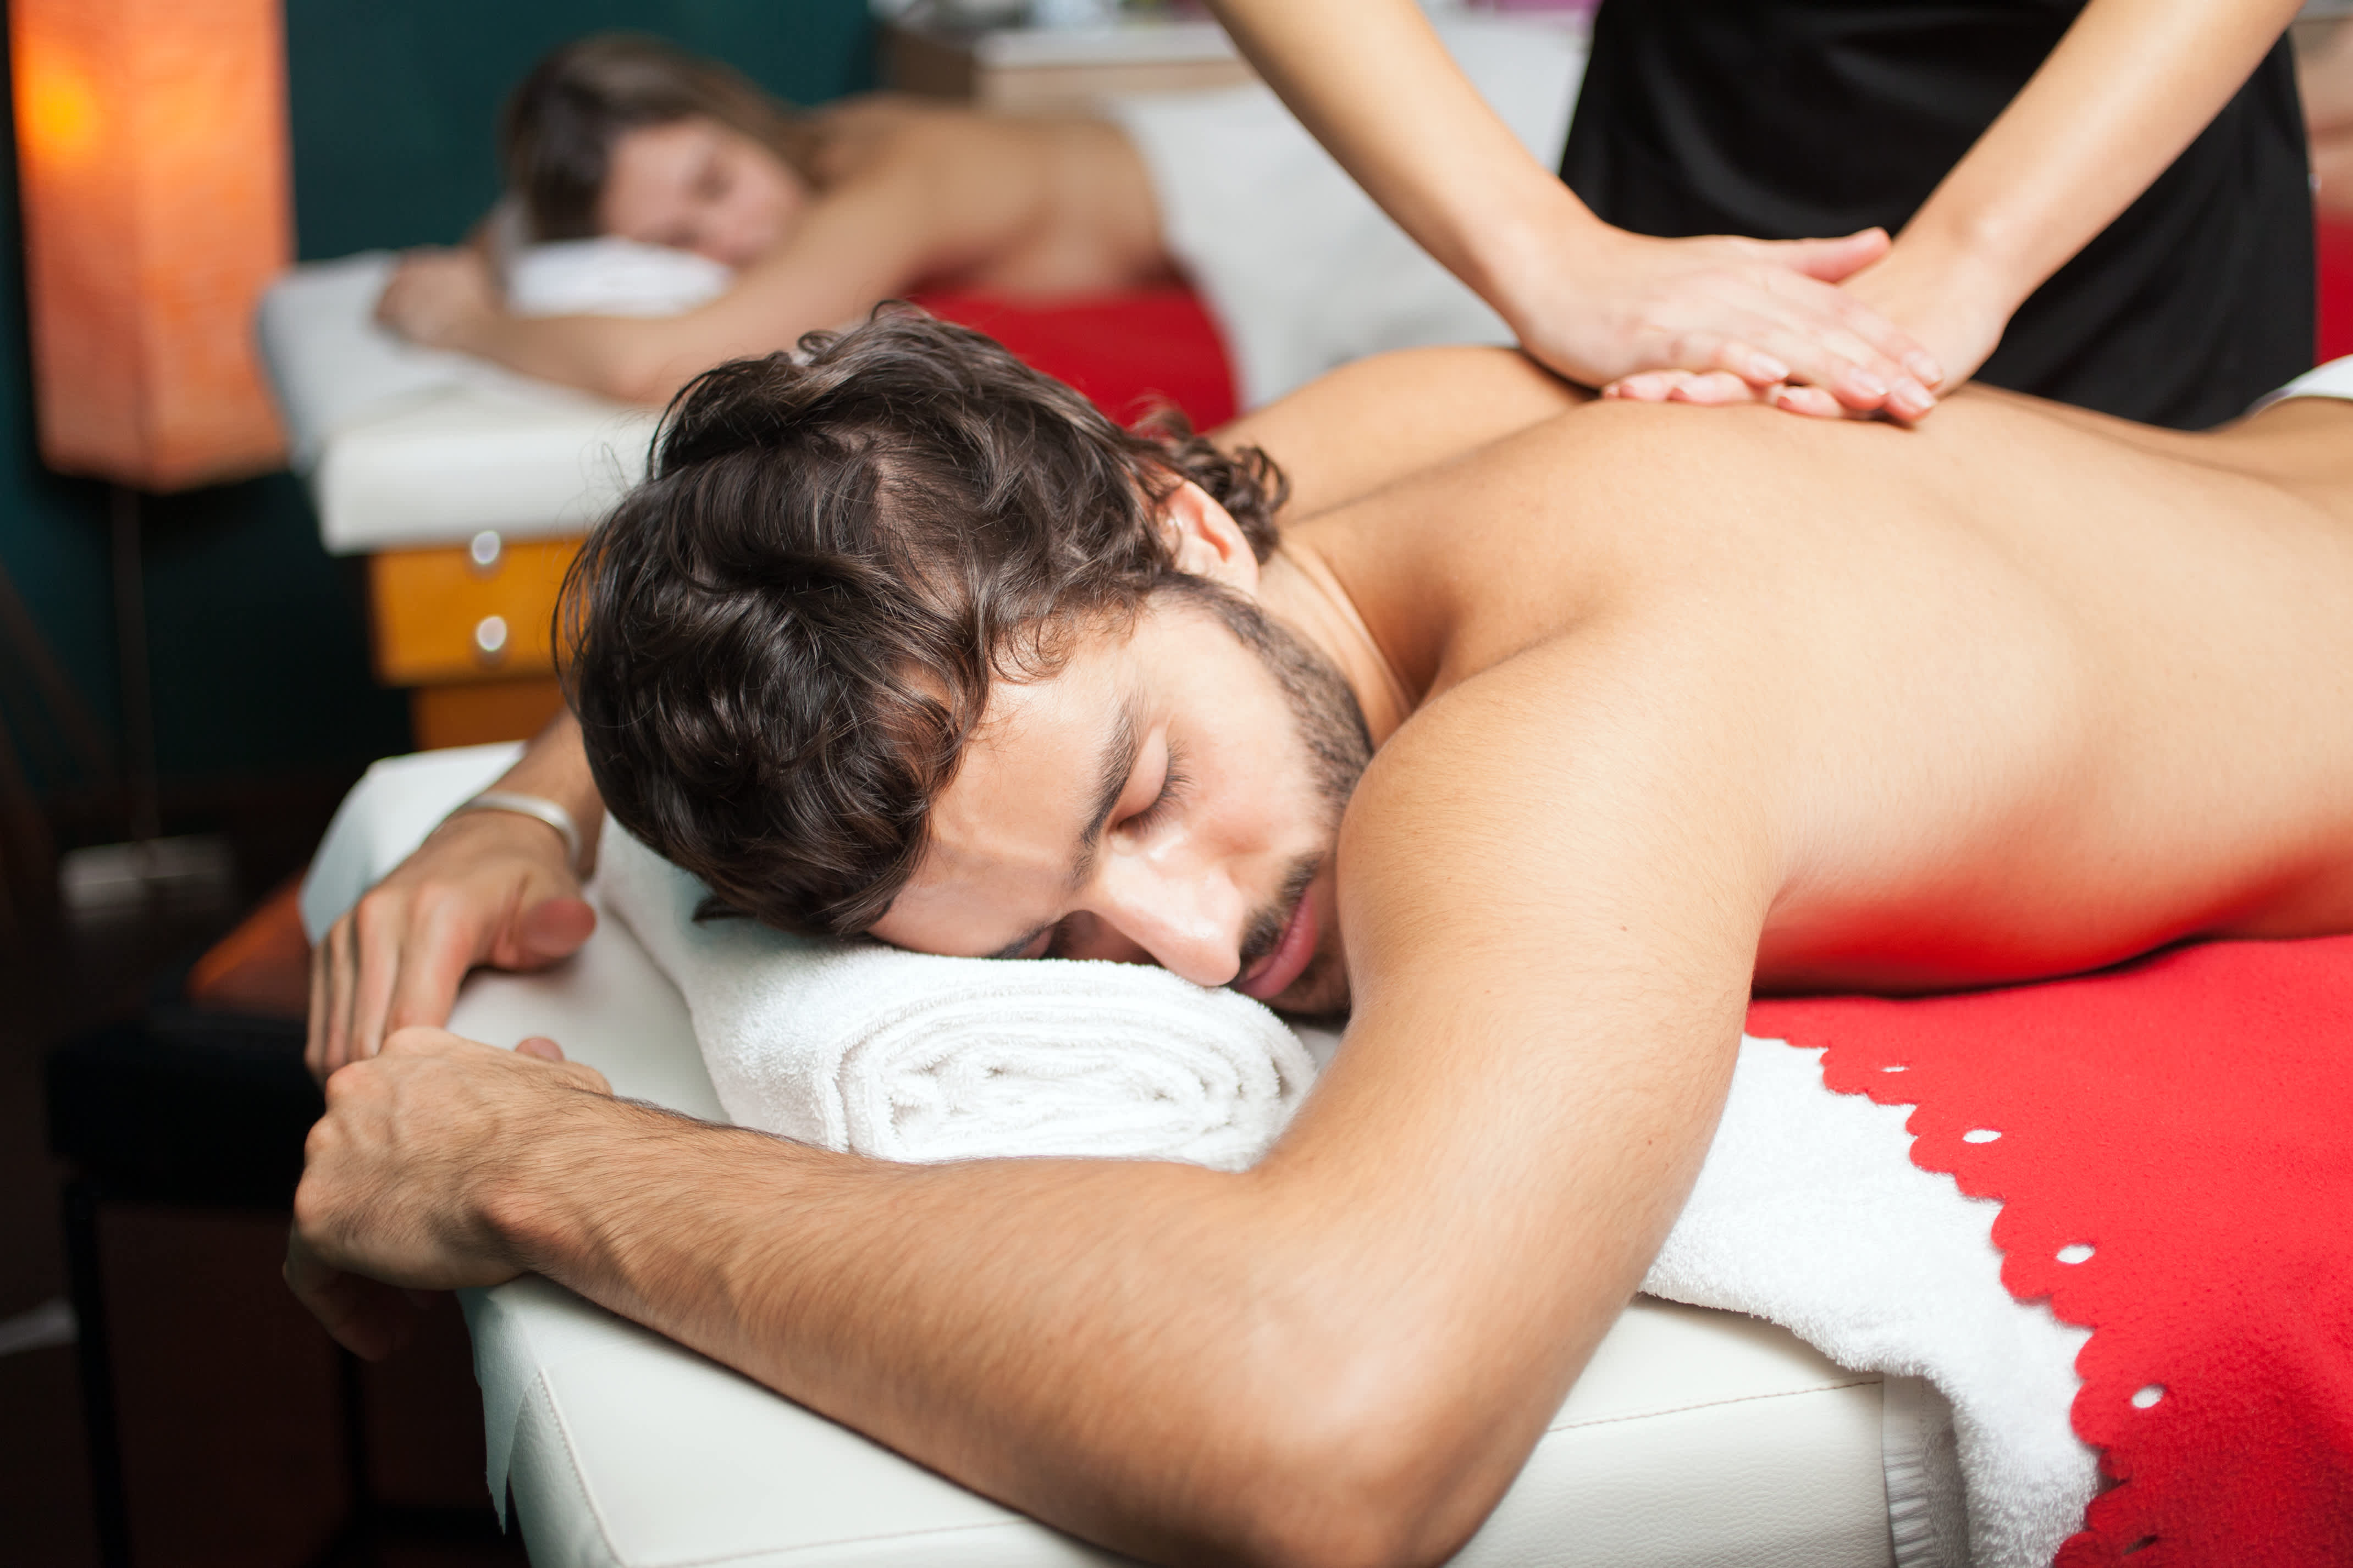 George massage. Шведский массаж. Шведский массаж картинки. Шведский массаж для мужчин. Шведский массаж спины.